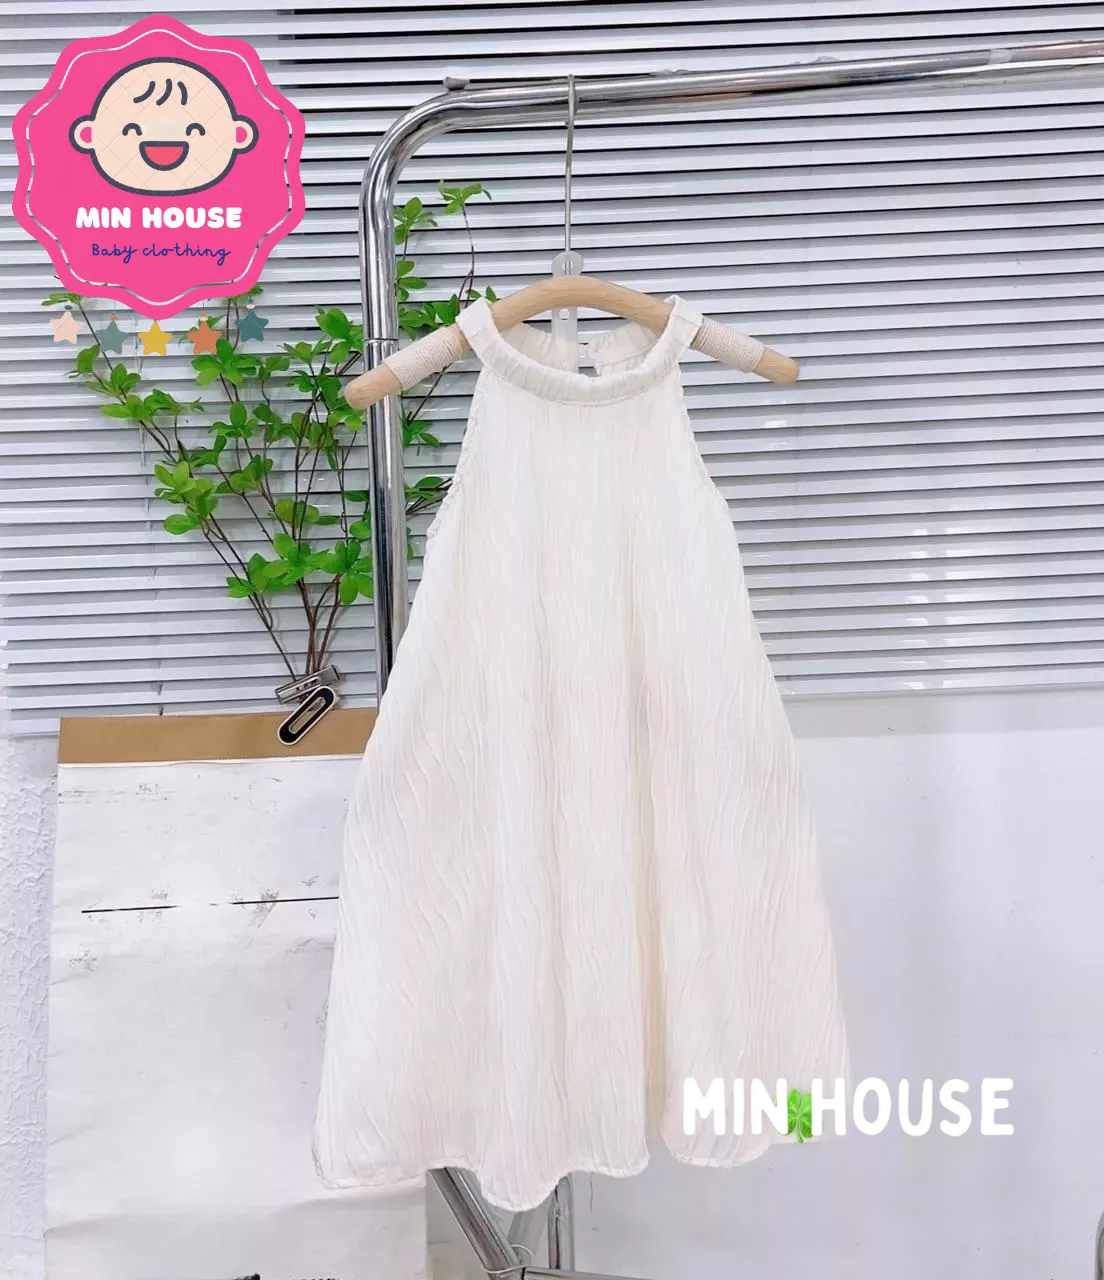 Váy Yếm Cho Be Gái 14 Tuổi - khuyến mại giá rẻ mới nhất tháng 3【Big Sale】